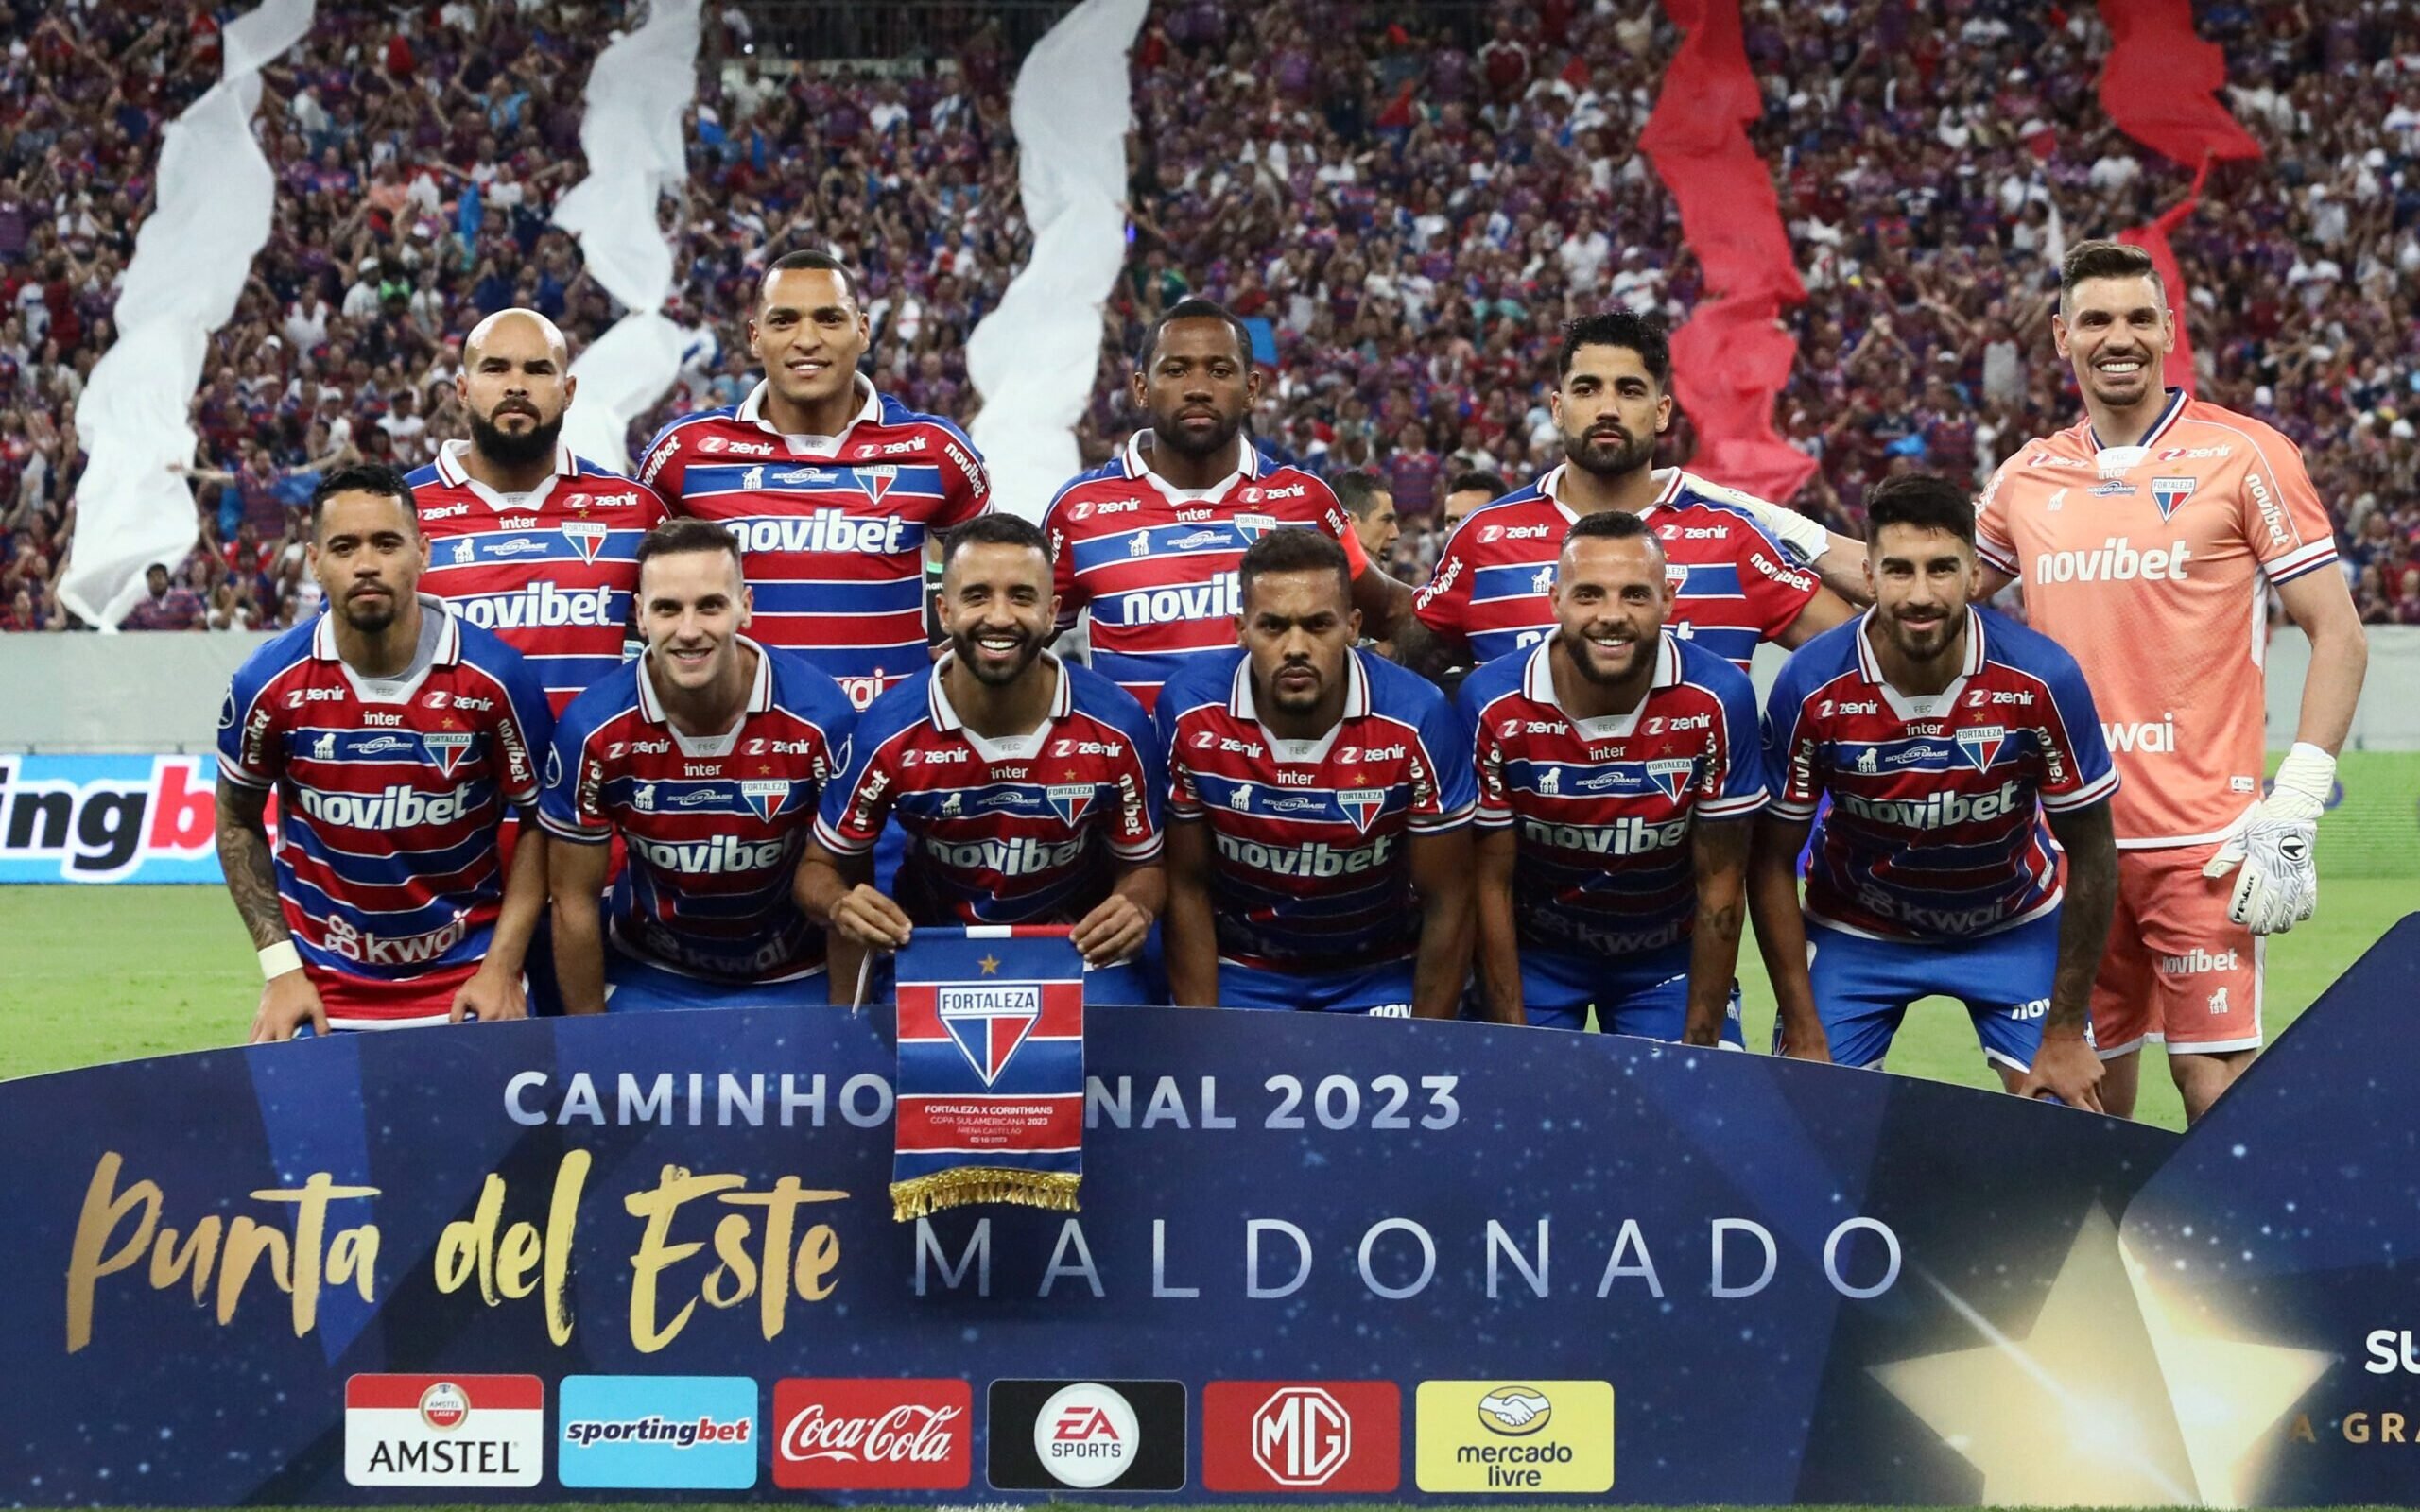 Uniformes para as finais de Montevidéu - CONMEBOL